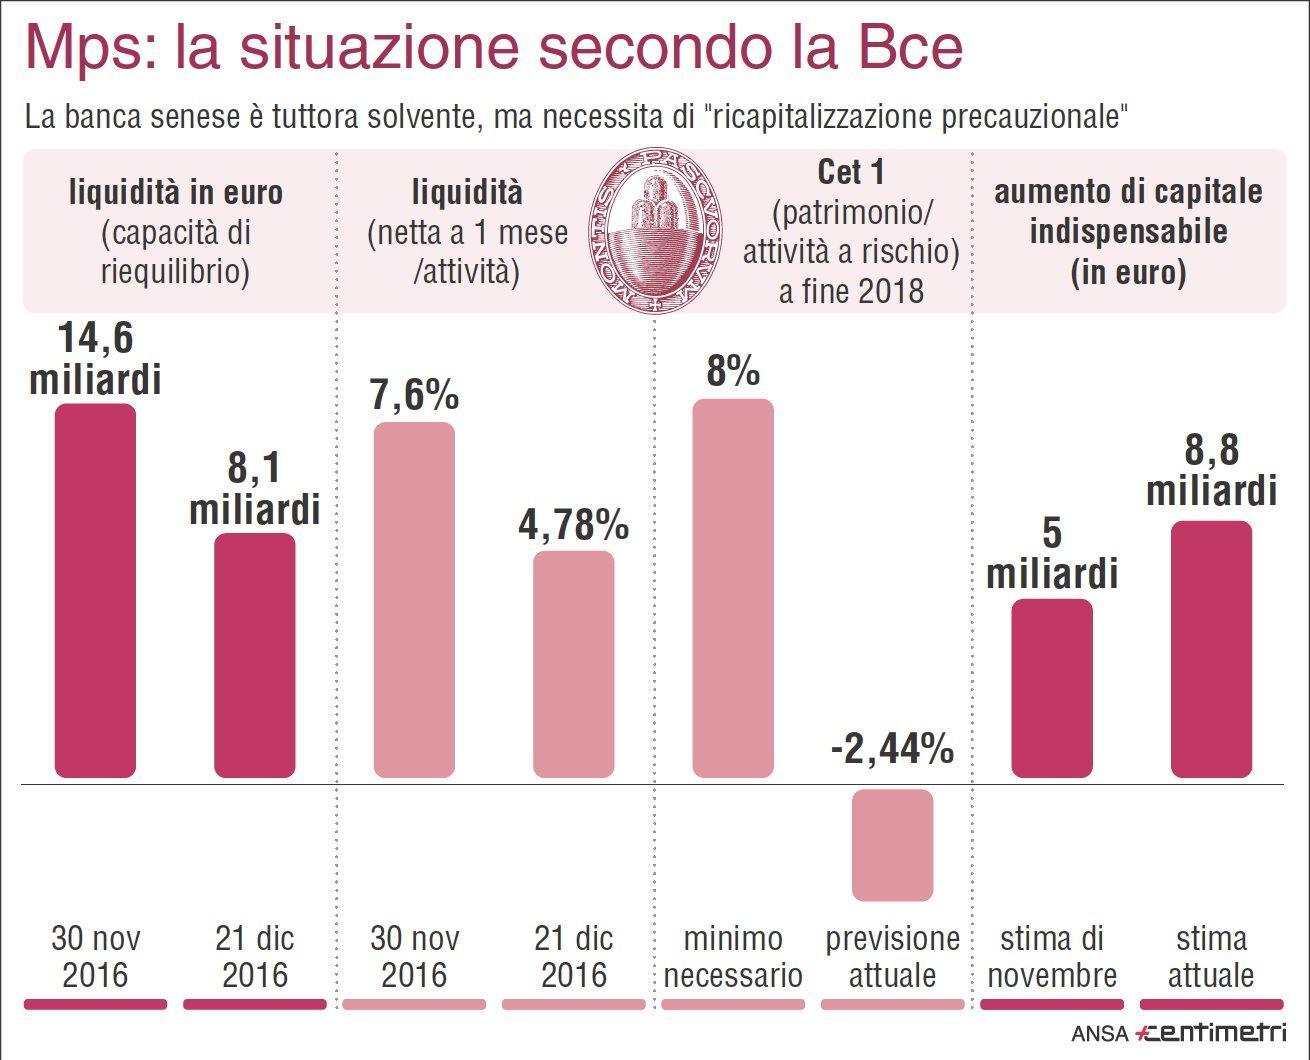 Nell'infografica realizzata da Centimetri la situazione di Monte dei Paschi di Siena secondo la Bce.
ANSA/CENTIMETRI